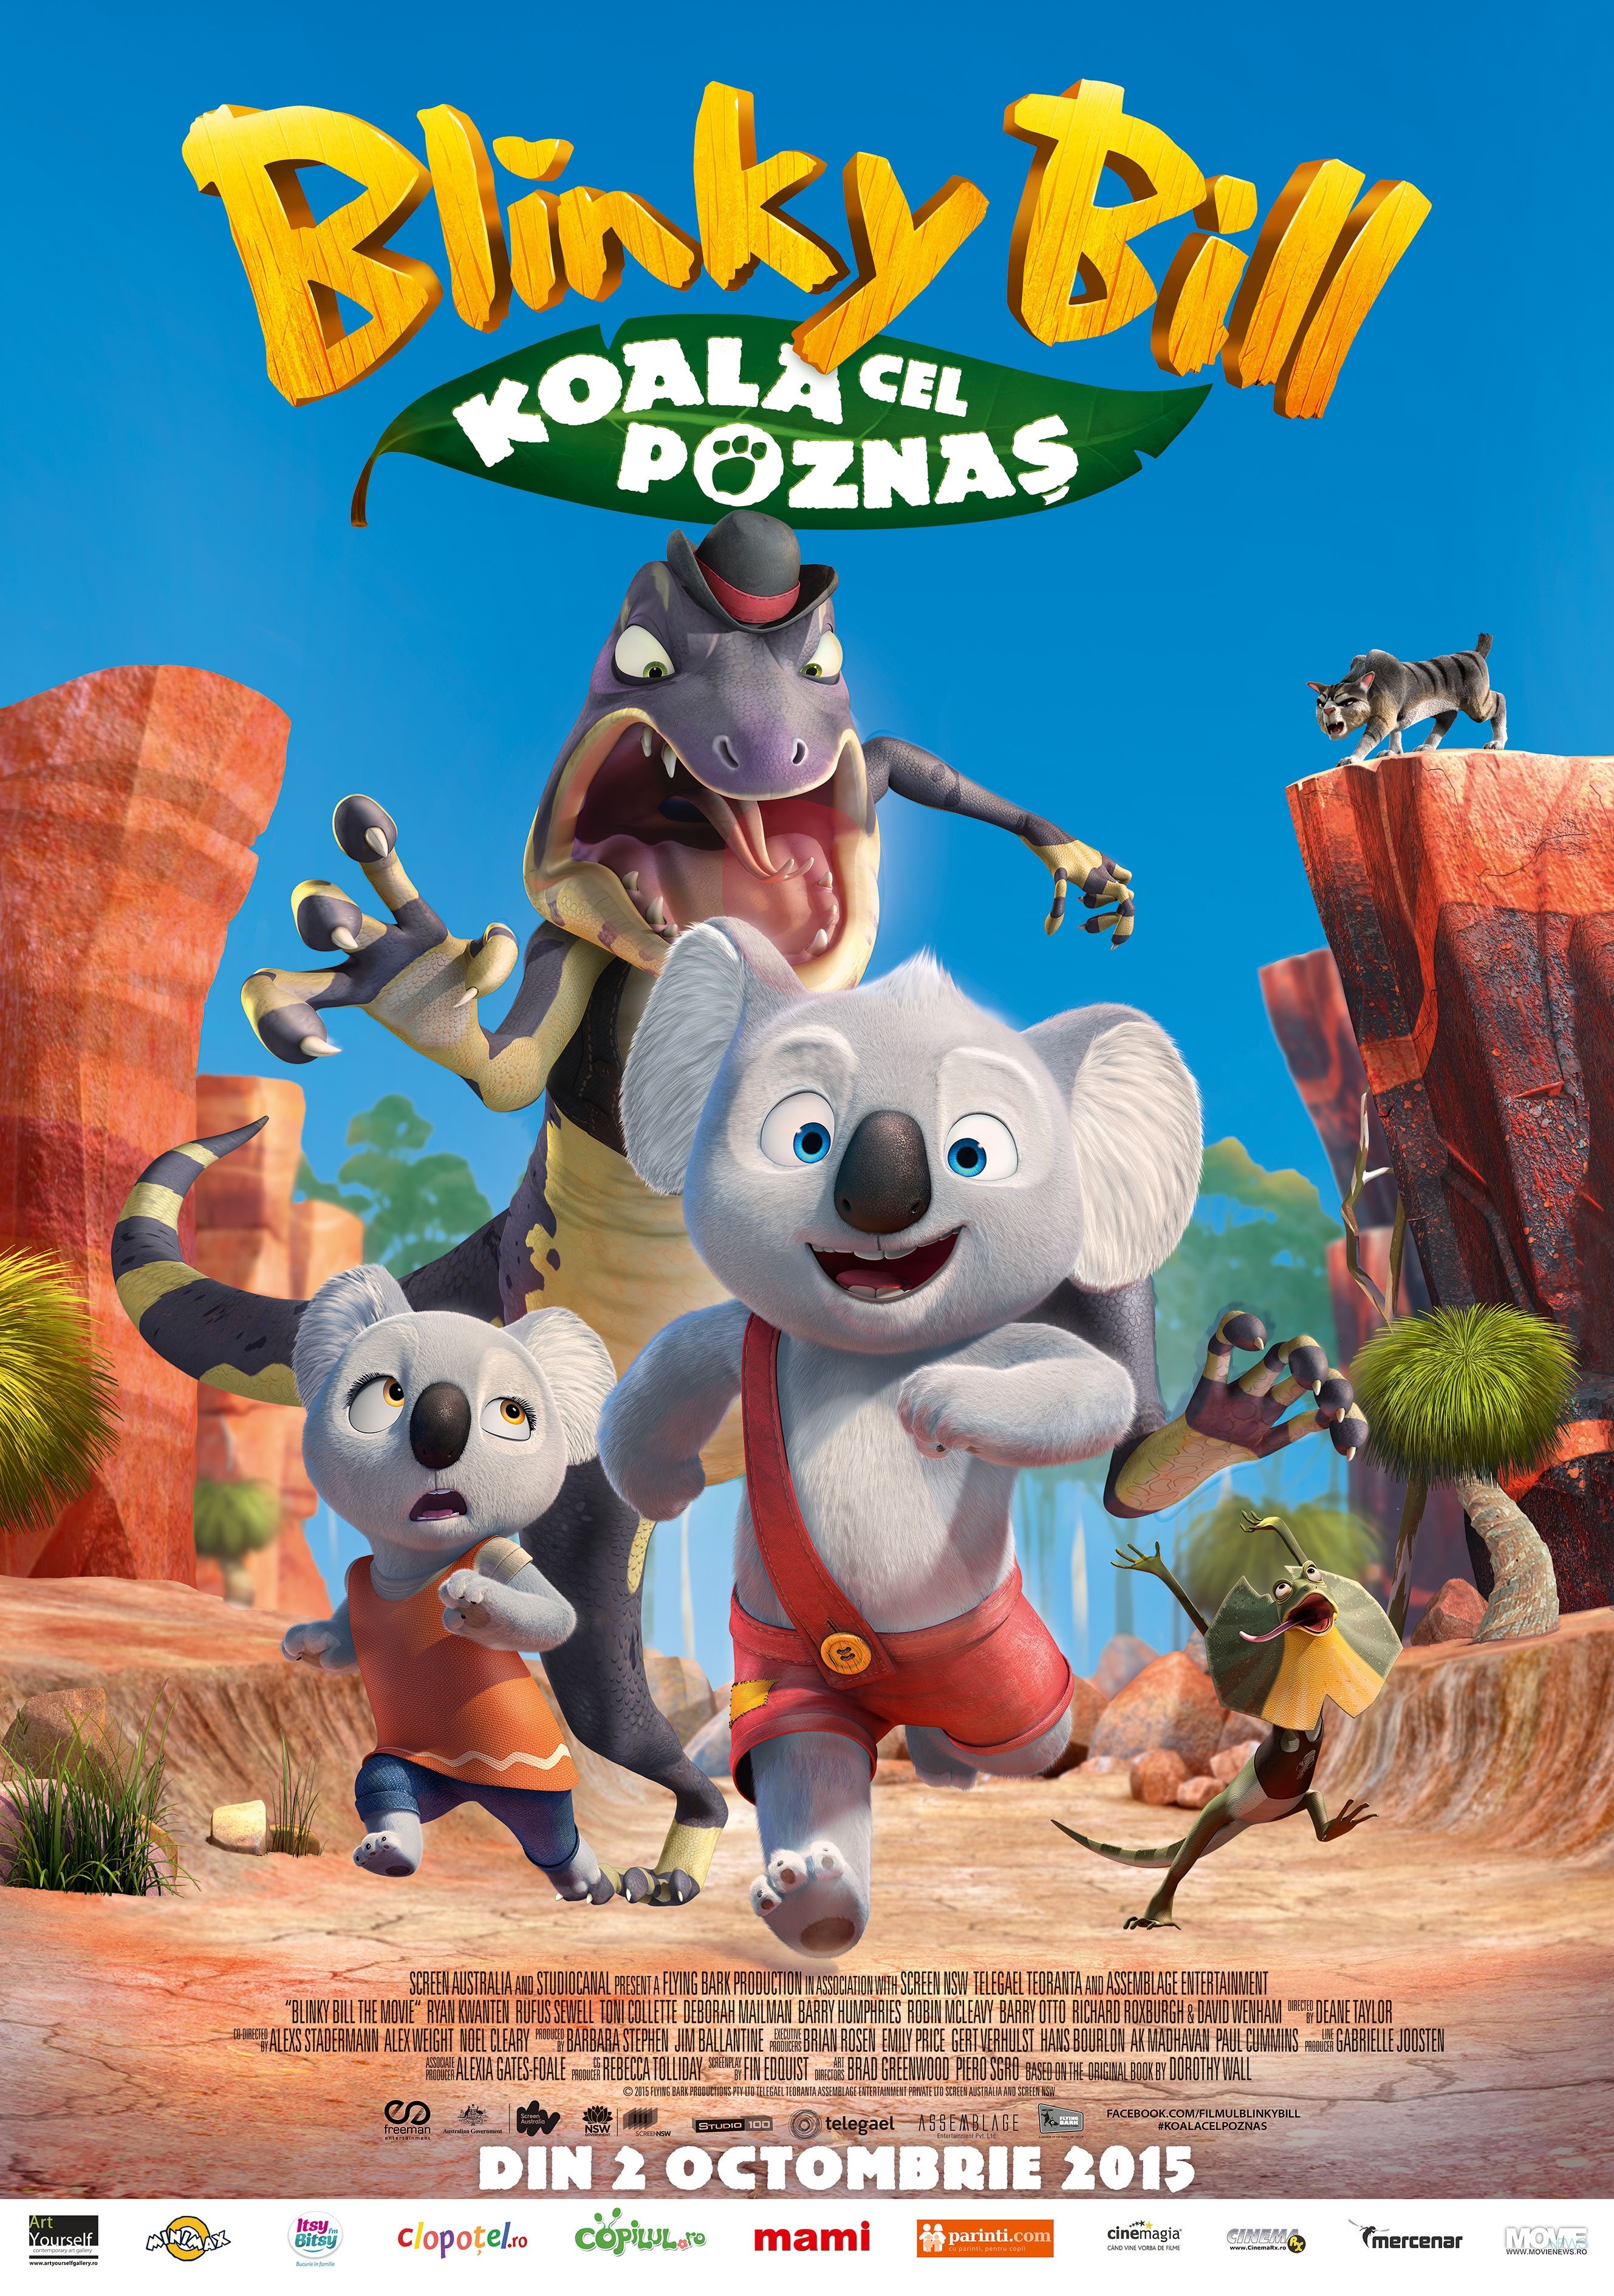 Blinky Bill: Koala cel poznas – 2D Dublat / Blinky Bill – 2D Dubbed (Premiera)